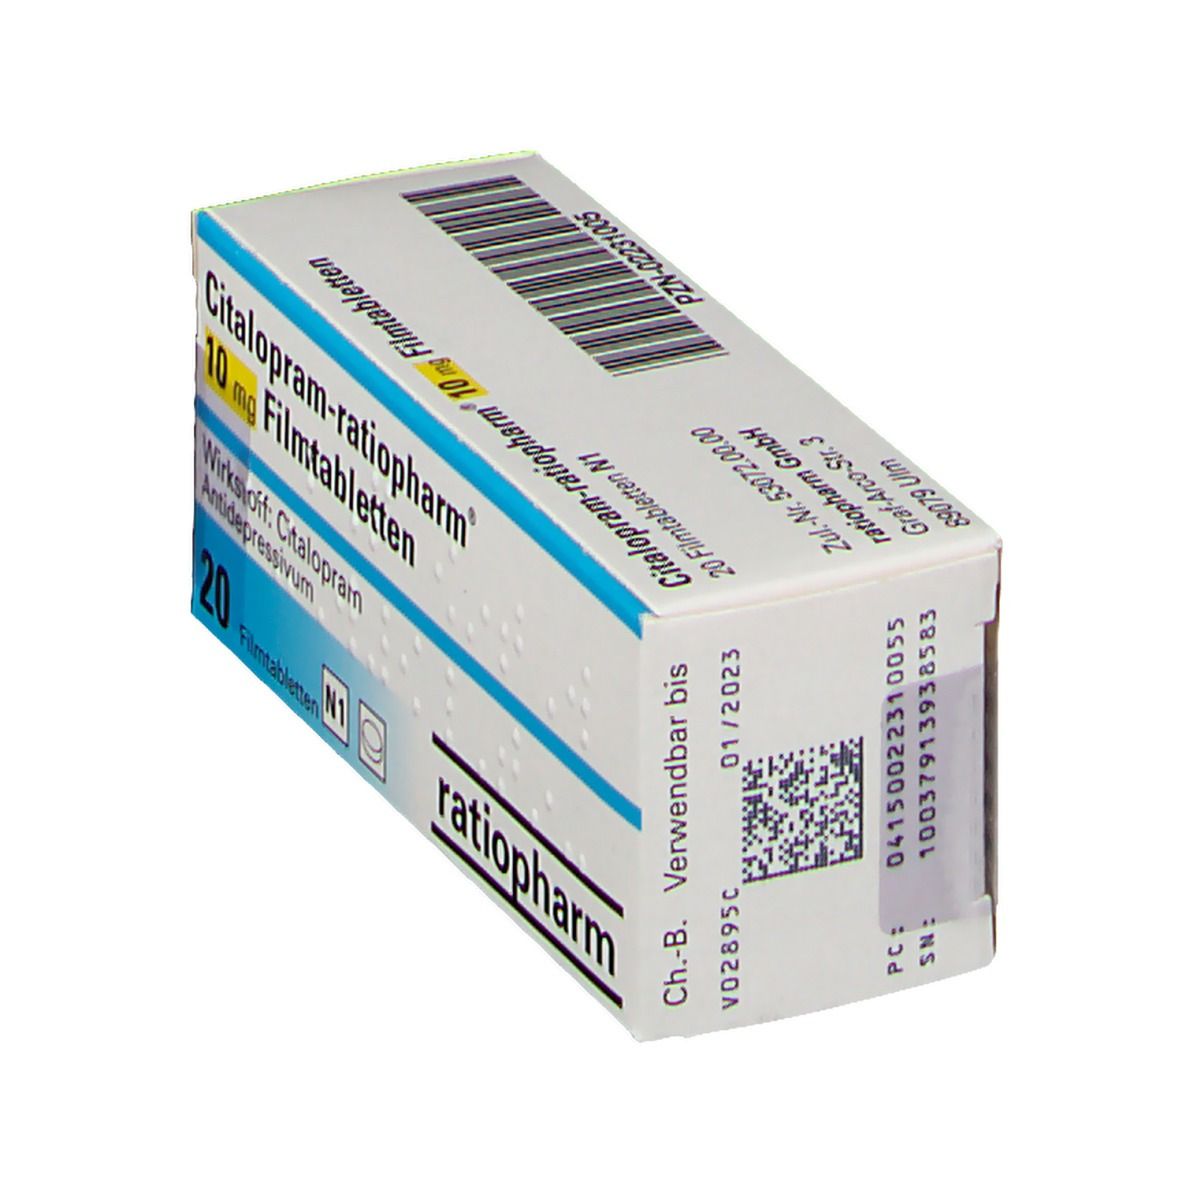 Citalopram-ratiopharm® 10 mg